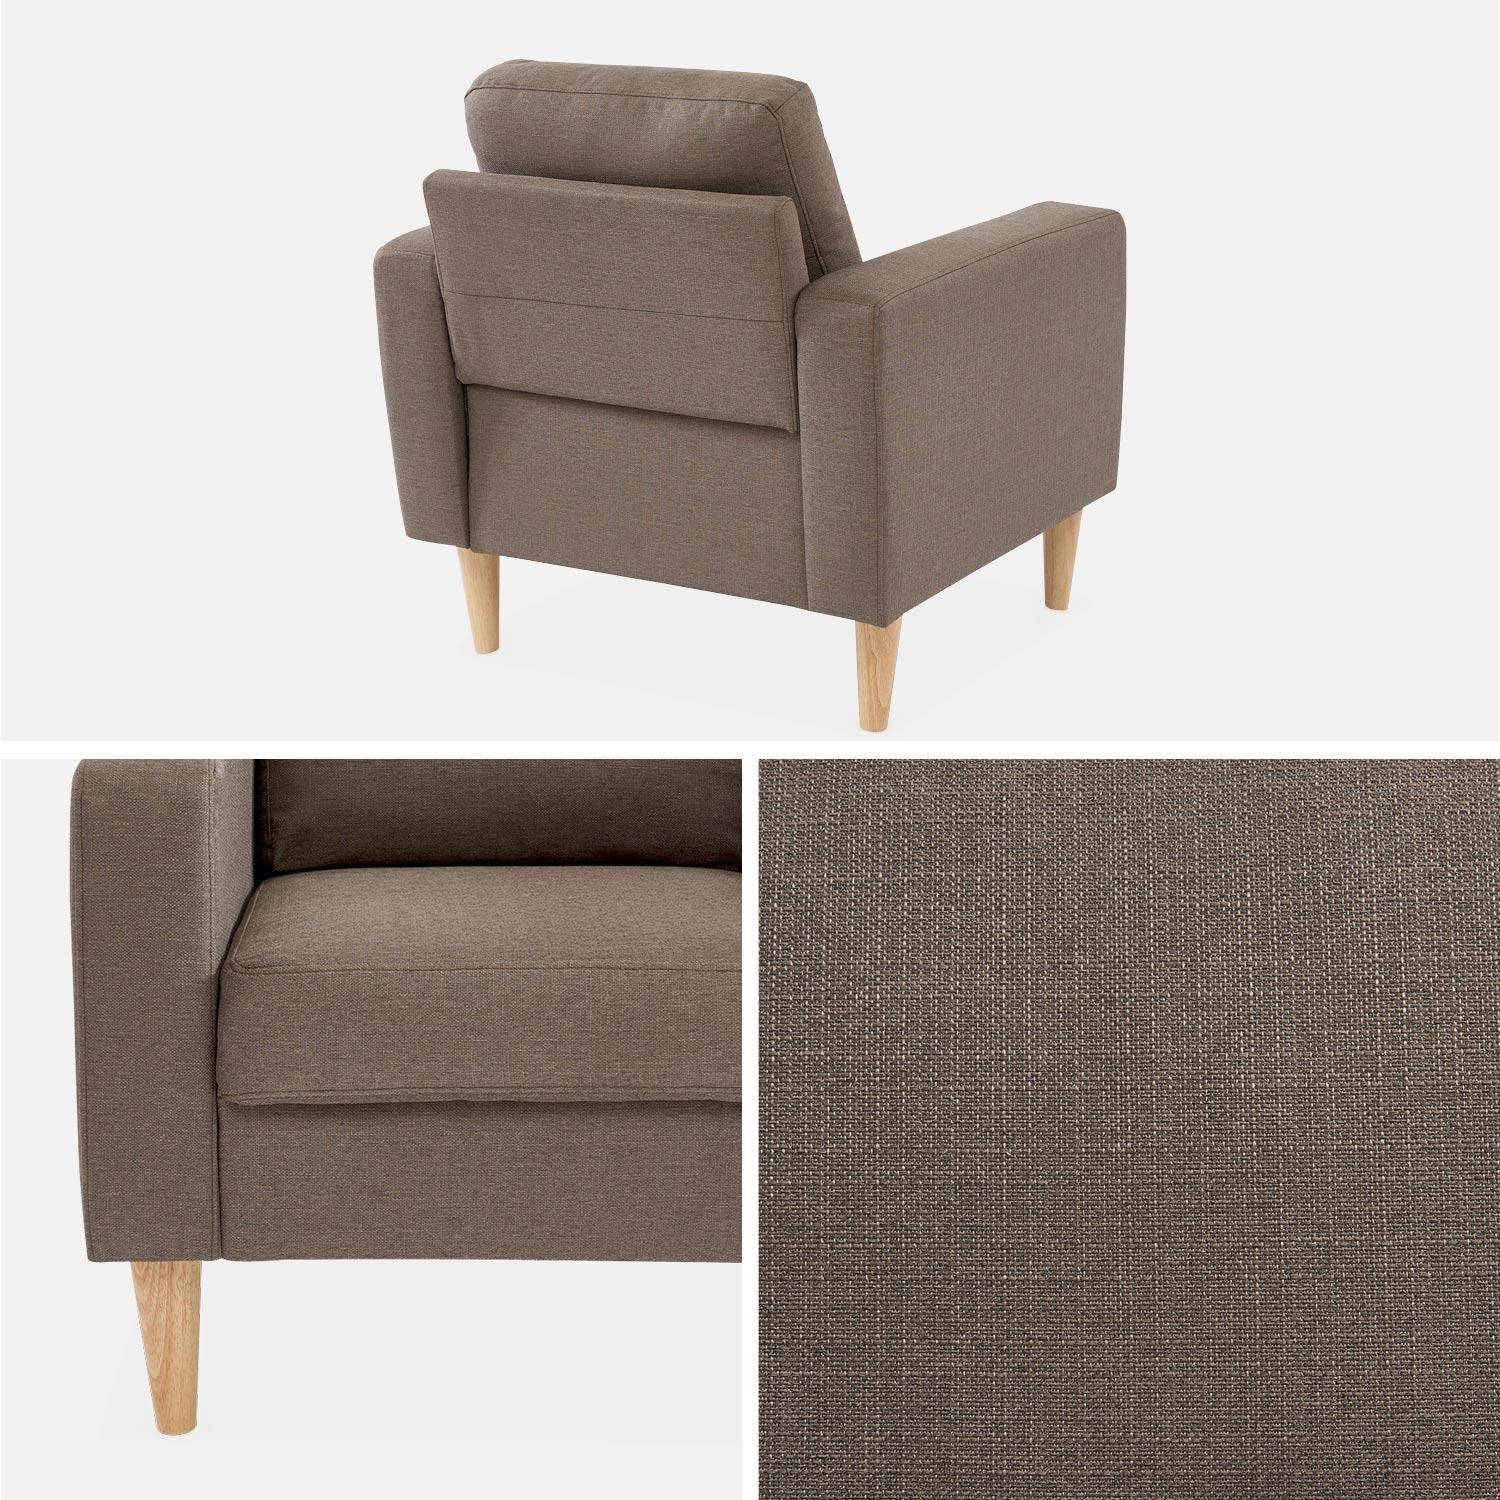 Bruine stoffen zetel - Bjorn - 1-zits sofa met houten poten, Scandinavische stijl Photo4